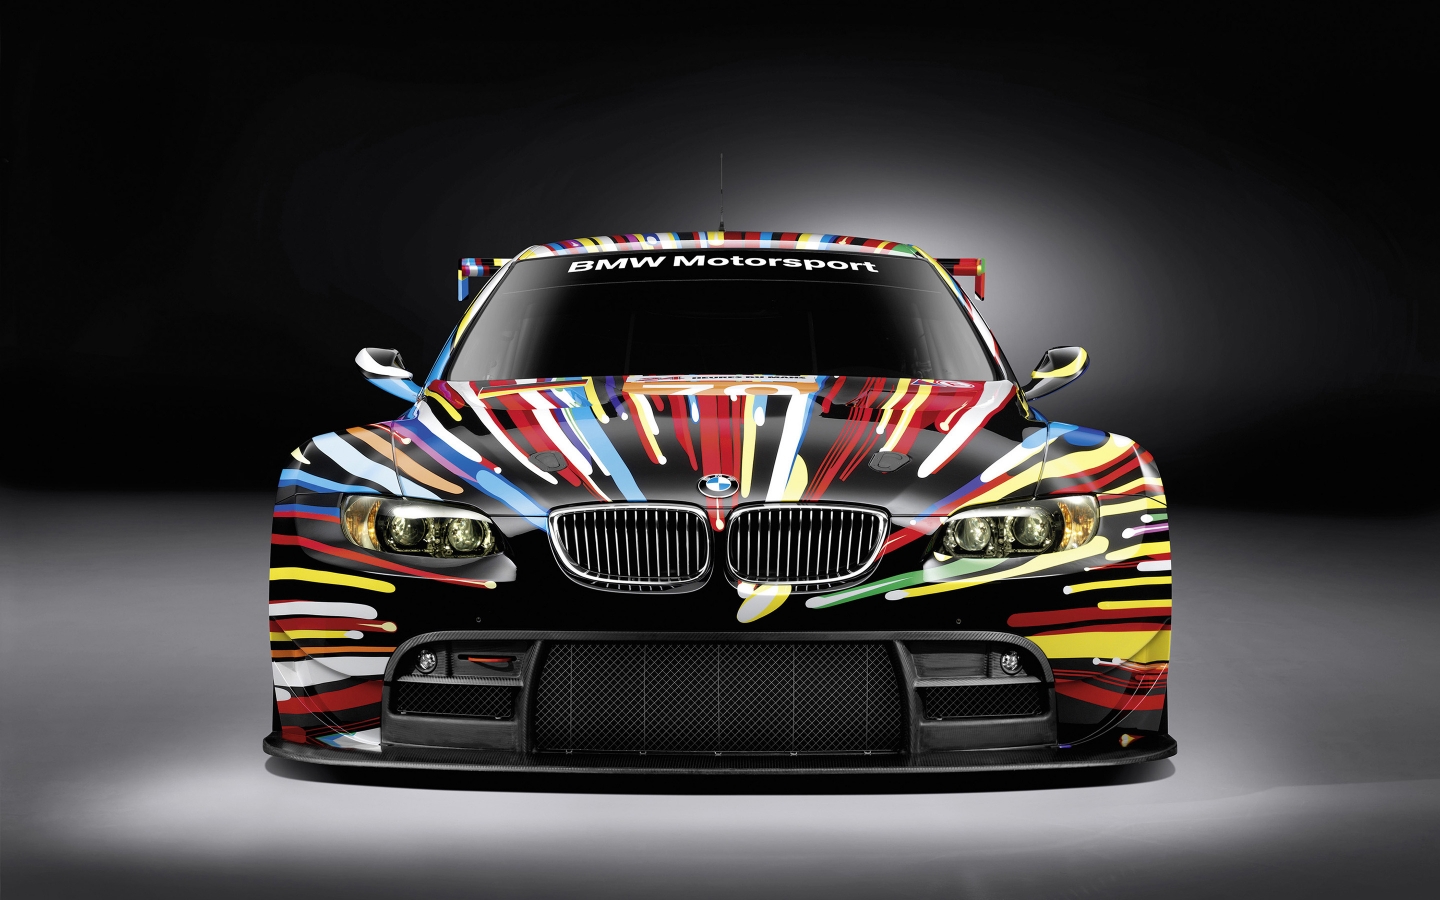 BMW M3 GT 2 Art for 1440 x 900 widescreen resolution